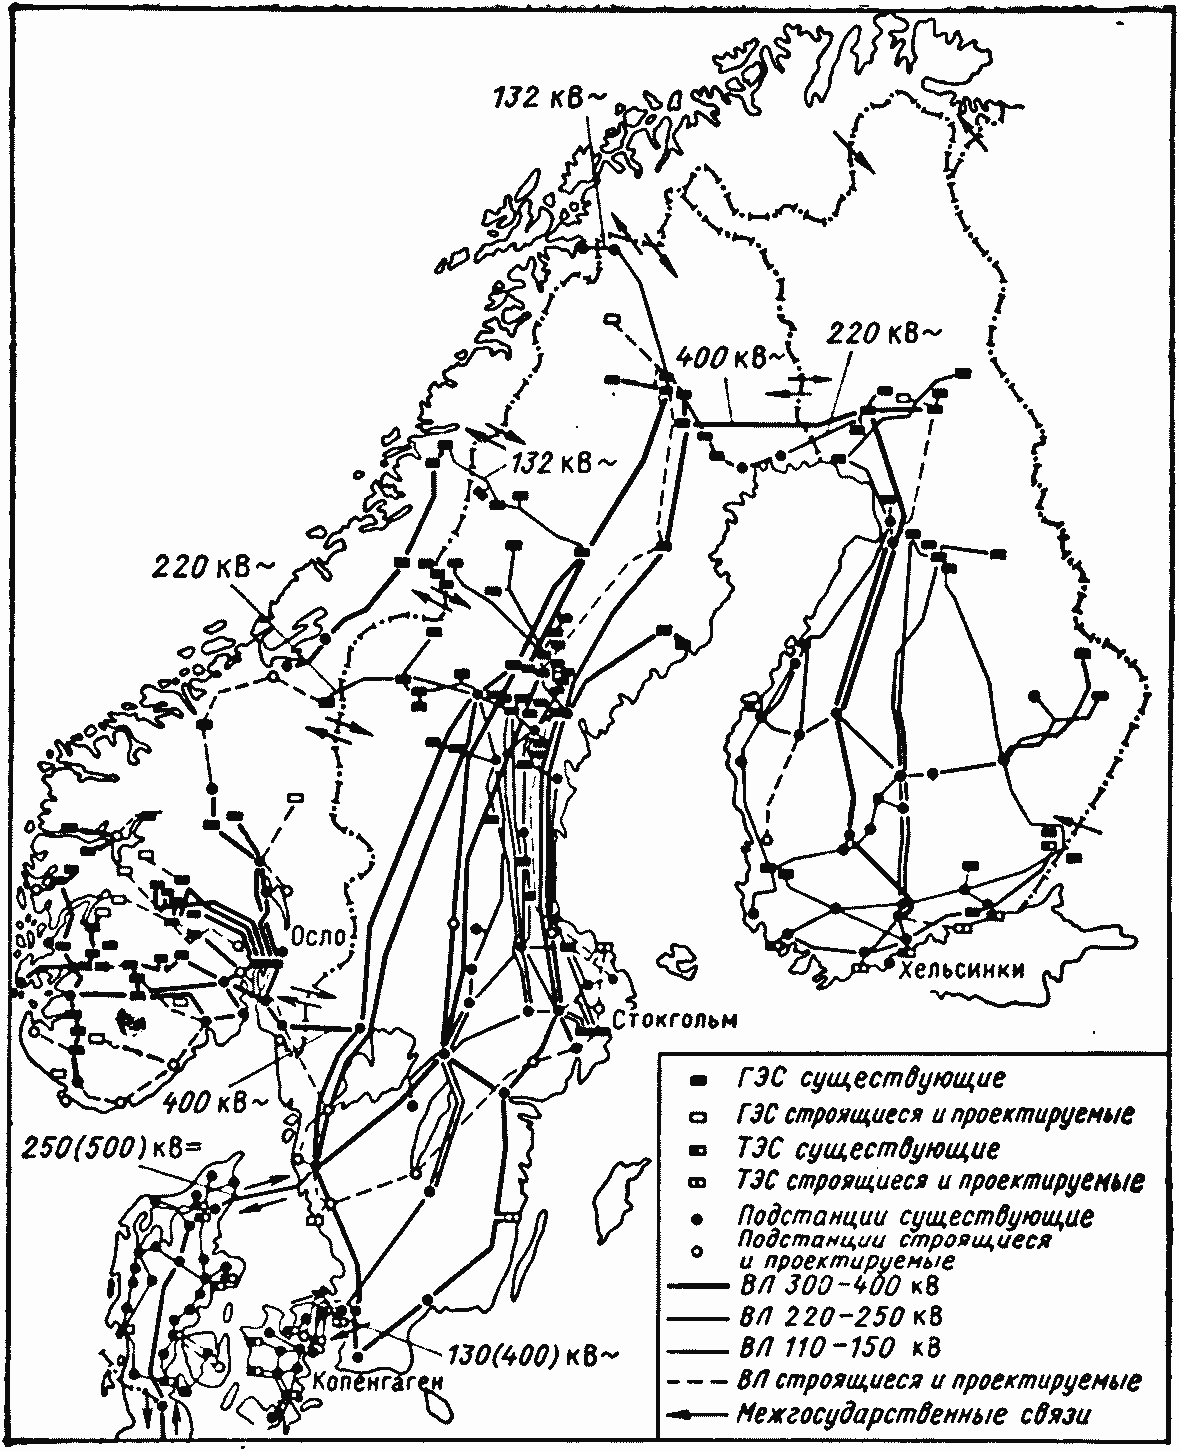 Карта-схема основных электрических сетей скандинавских стран